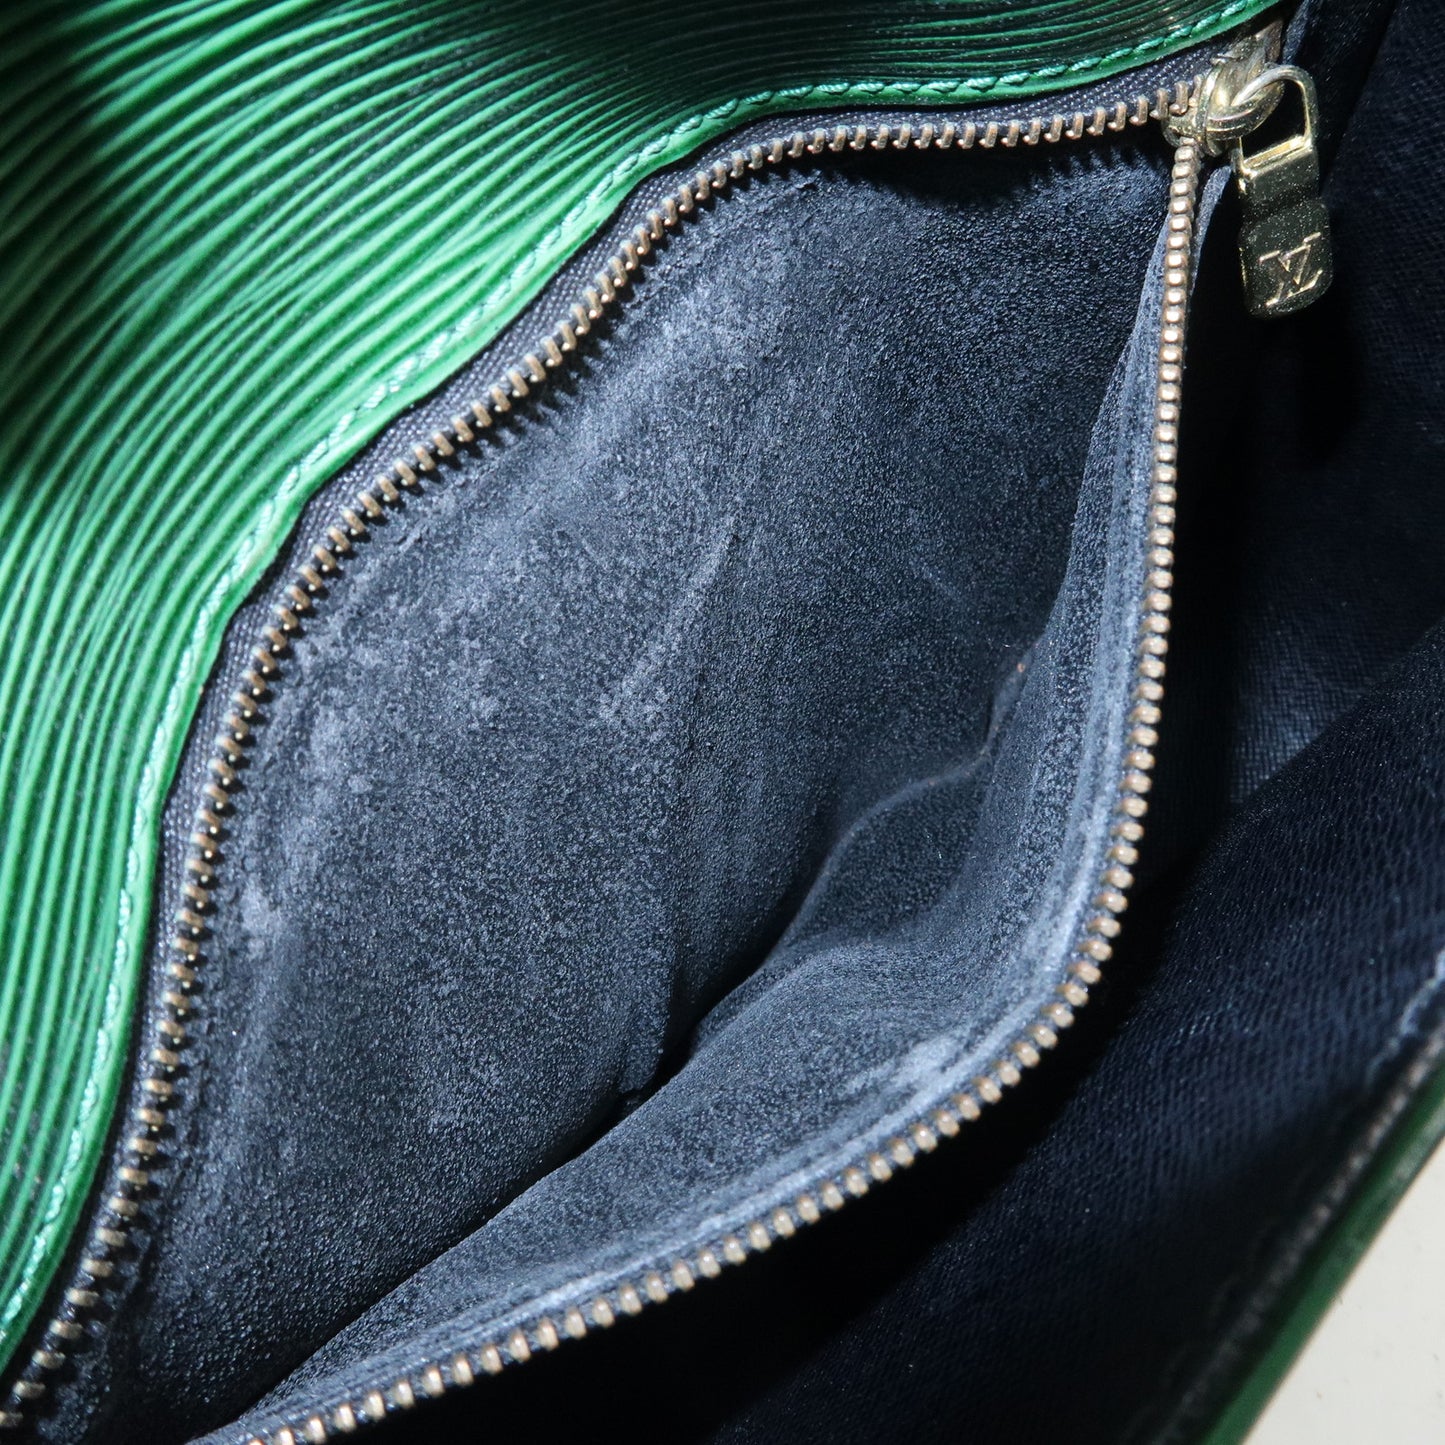 Louis Vuitton Epi Saint Cloud Shoulder Bag Green M52194